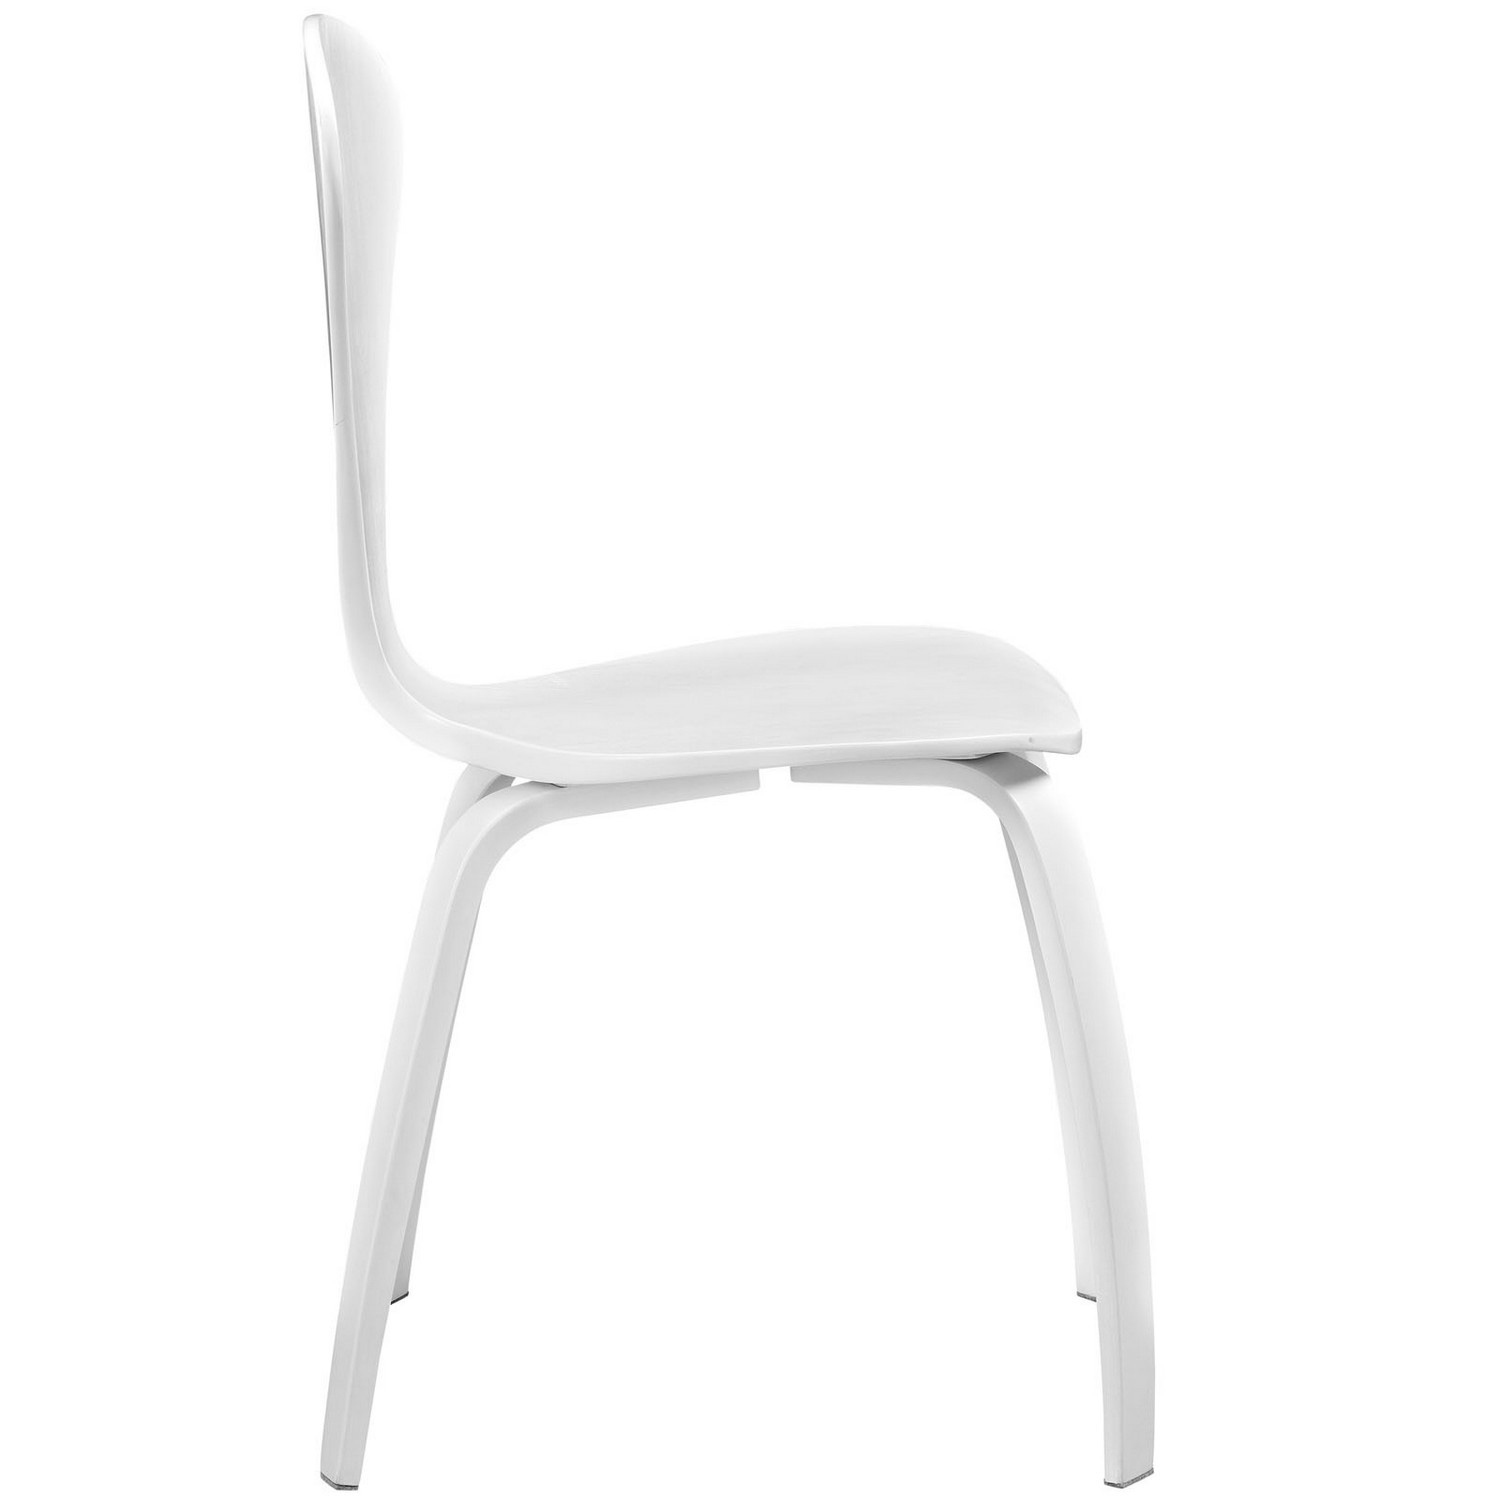 Modway Vortex Dining Side Chair - White